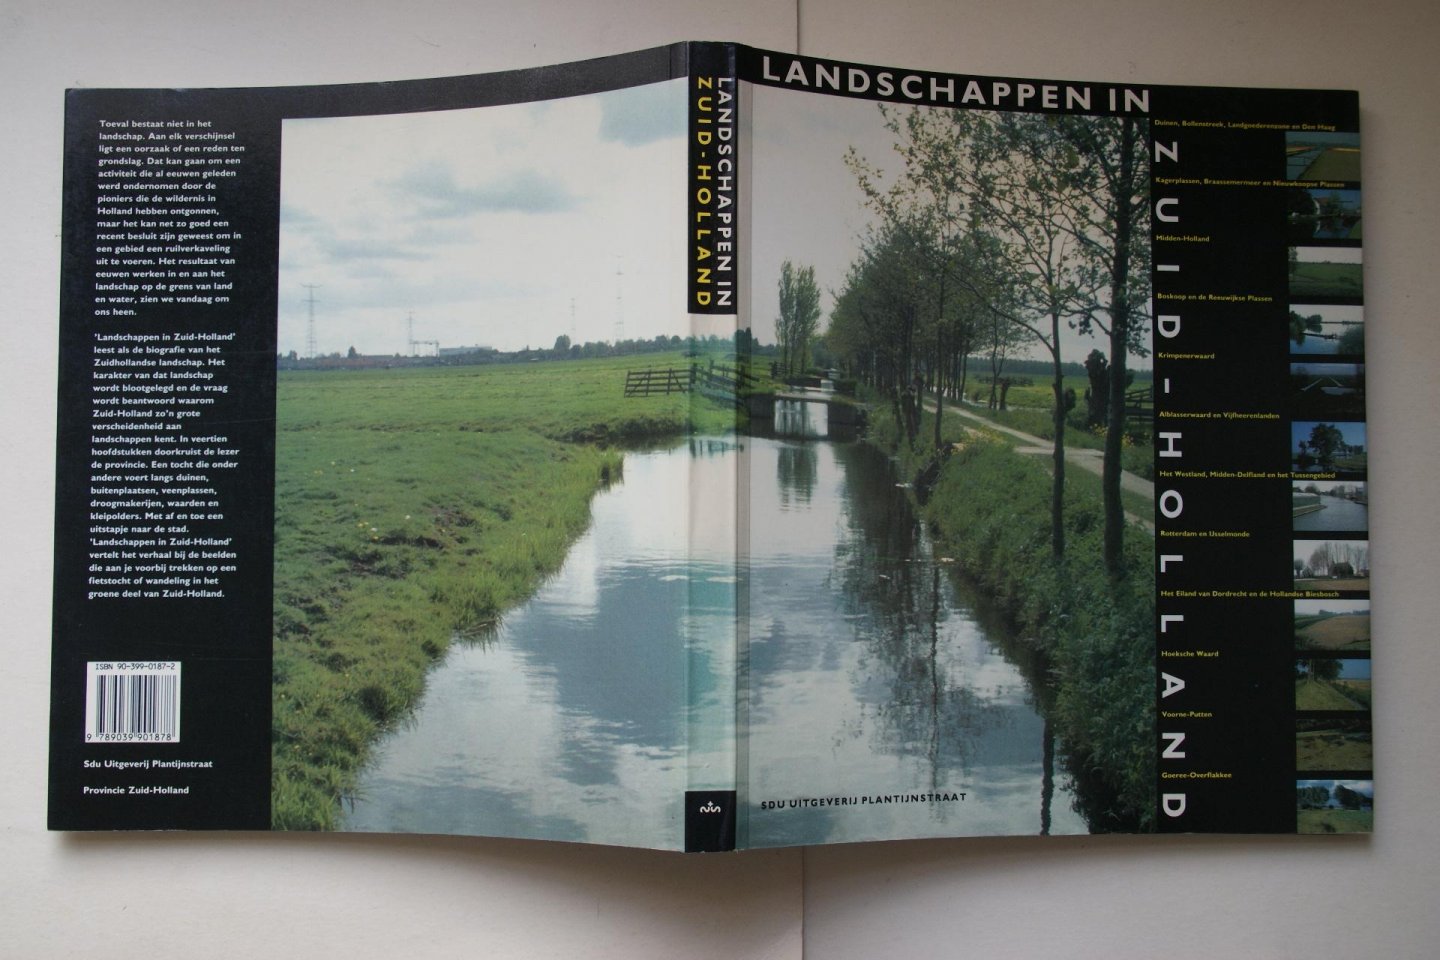 Oerlemans, Hans - aardrijkskunde: Landschappen In Zuid - Holland